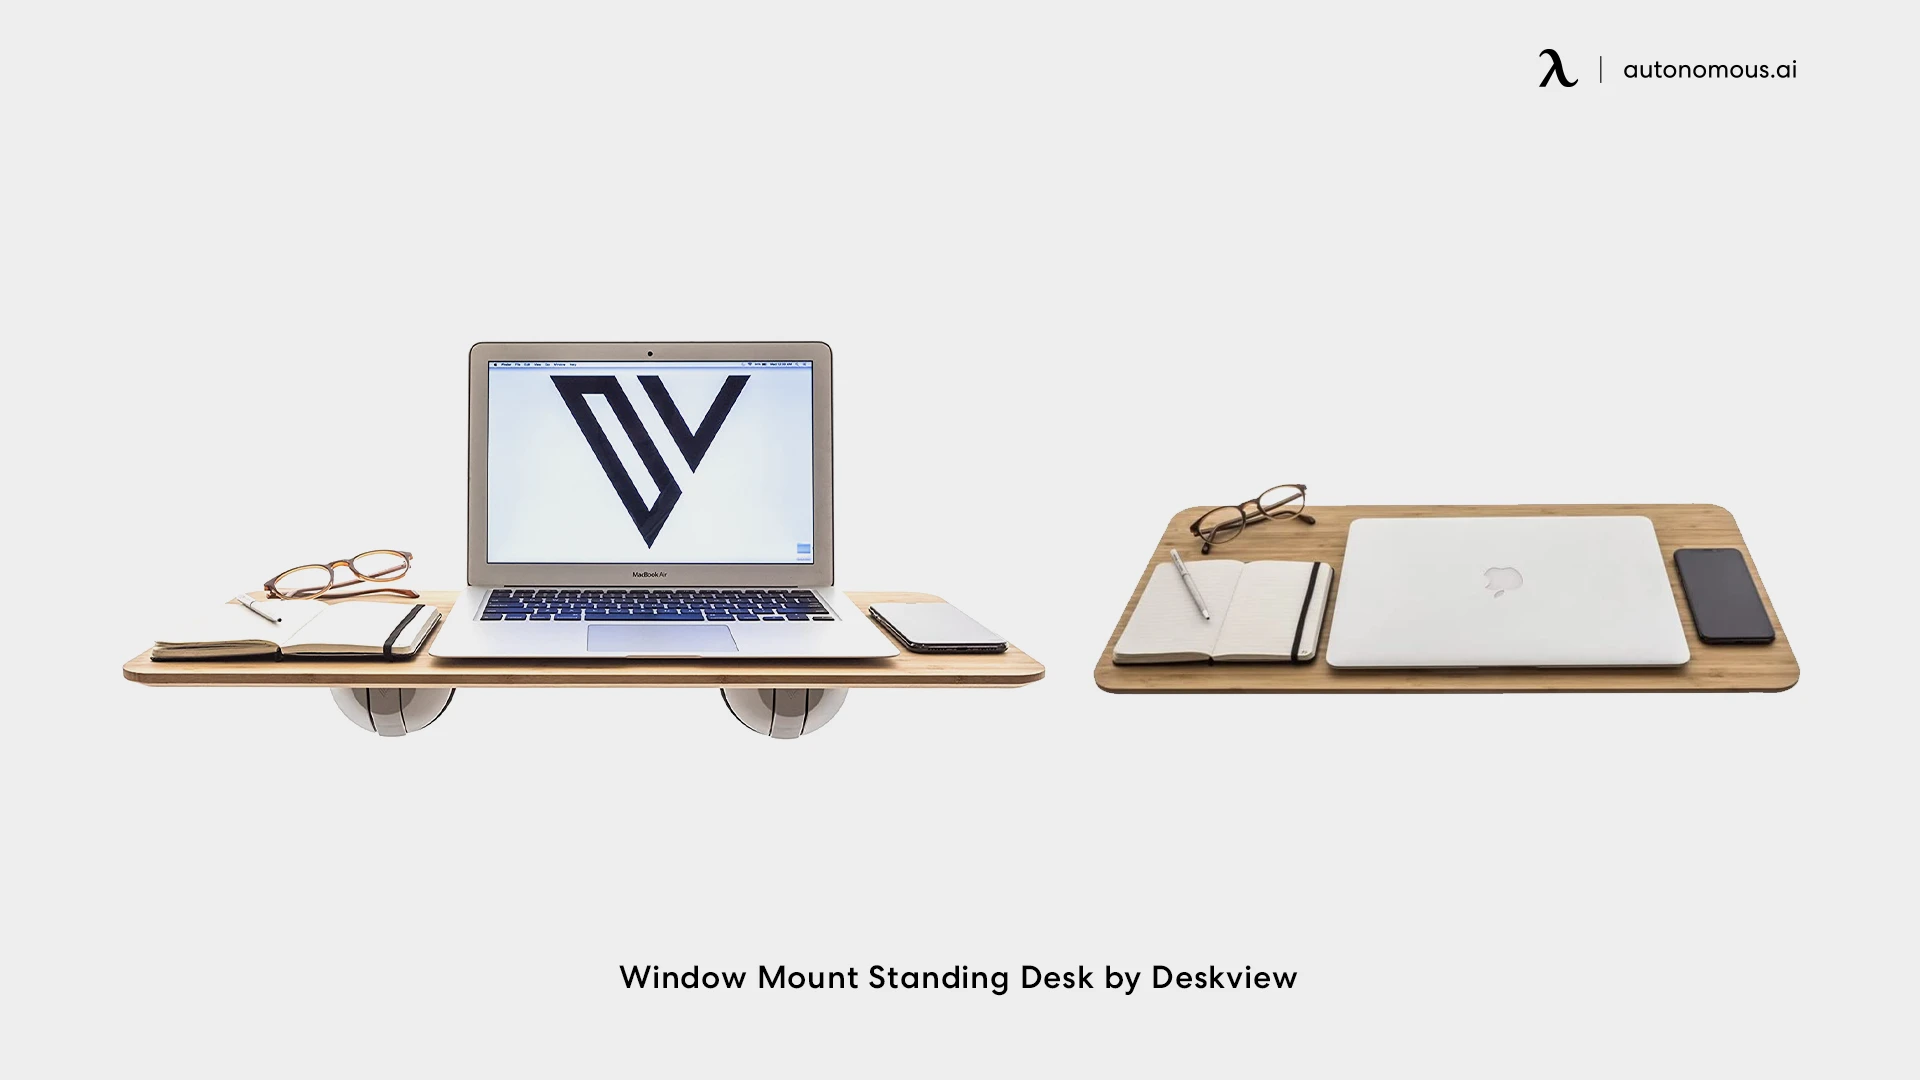 Window Mount Standing Desk by Deskview